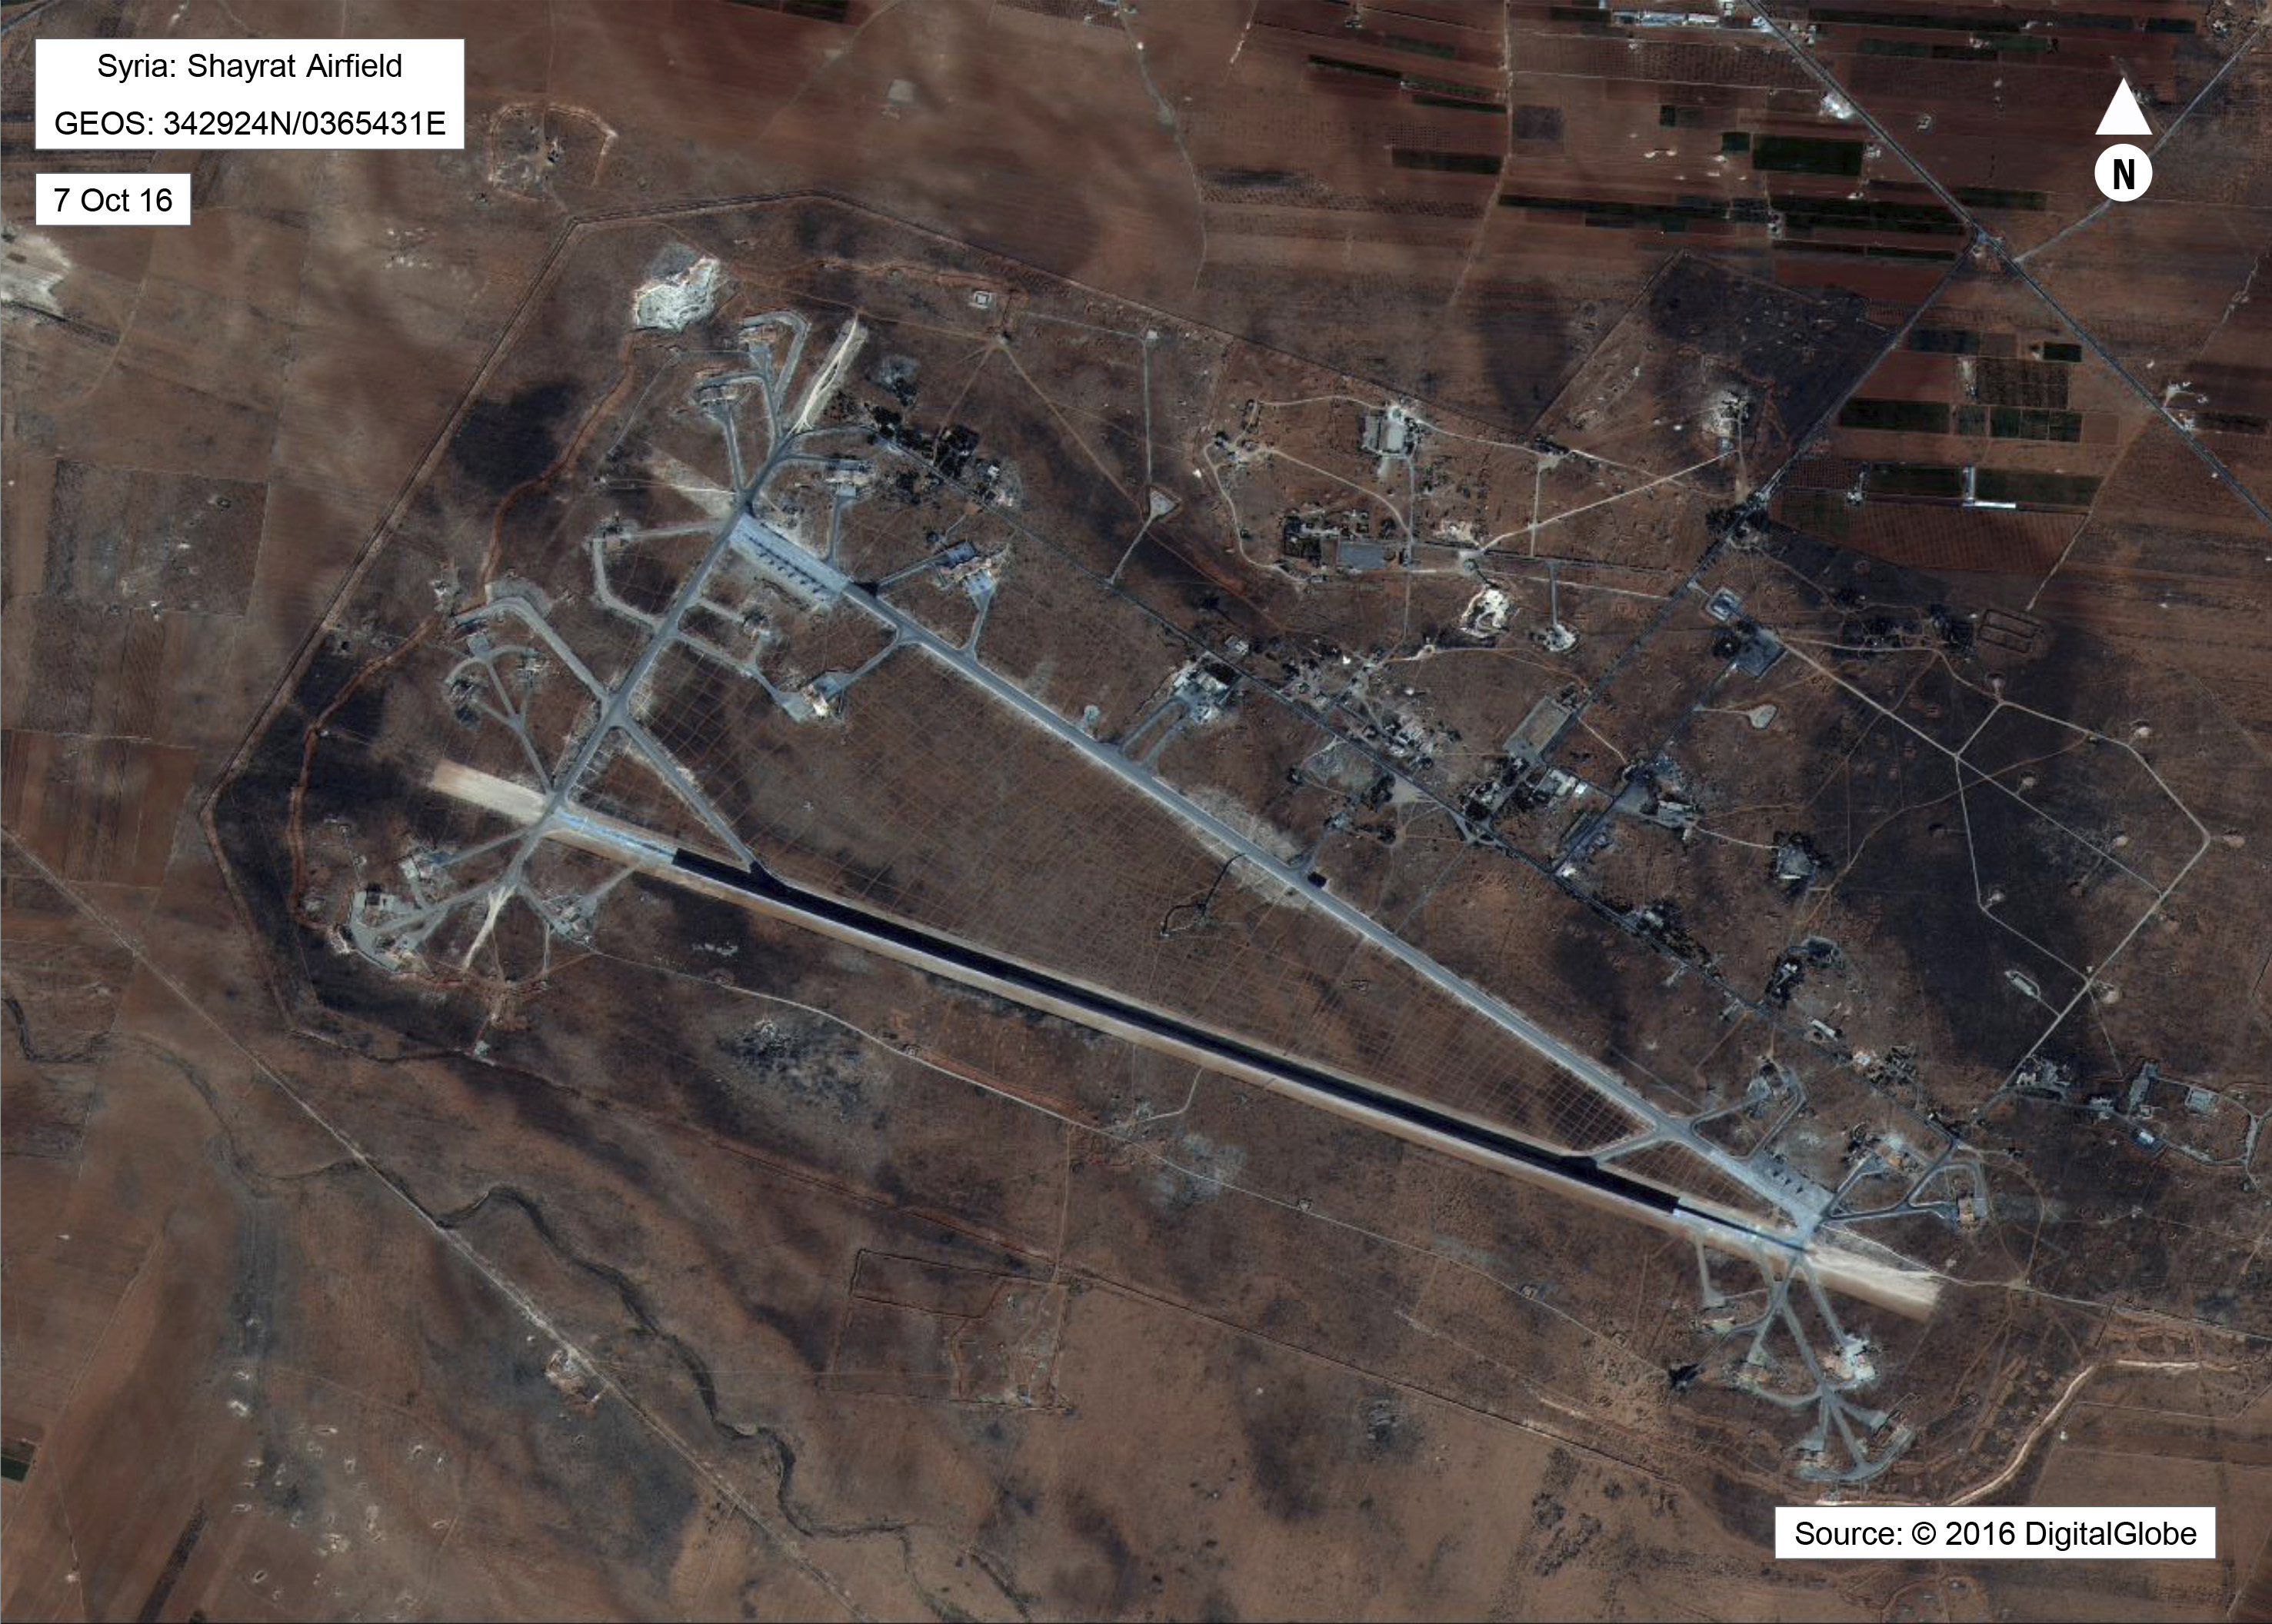 Сателитна снимка, разпространена от Пентагона, показва поразената военна база ”Шайрат”